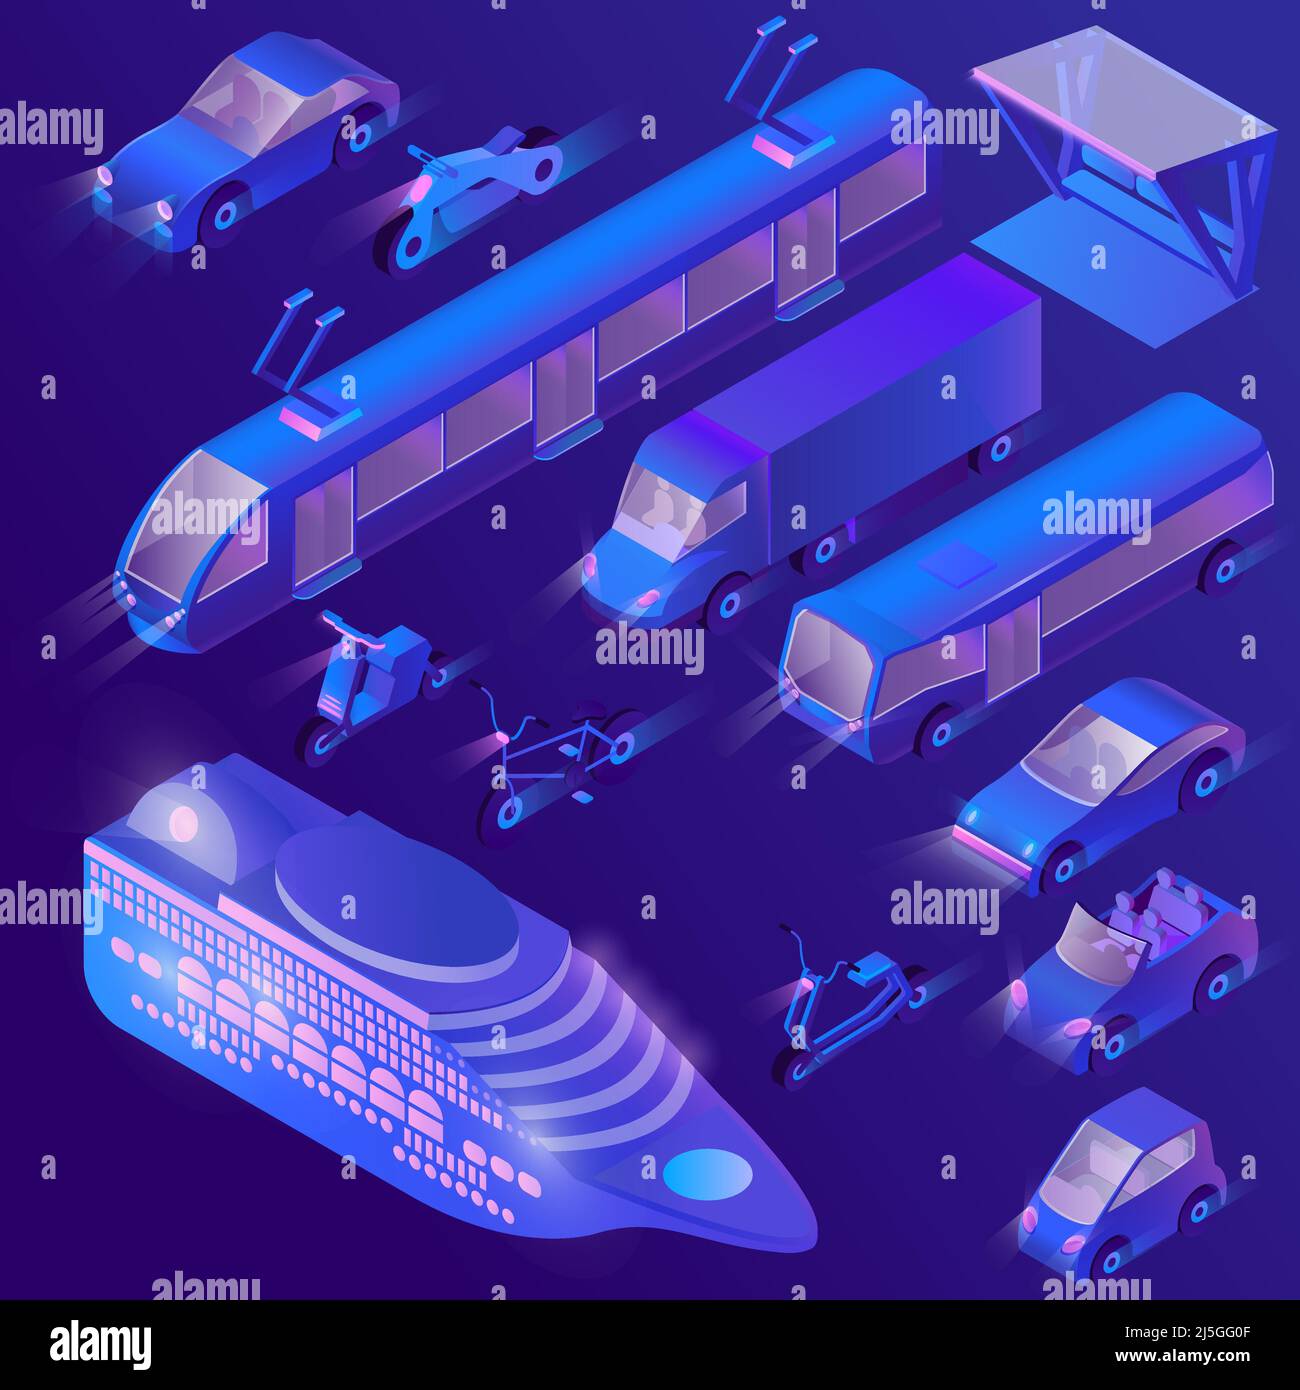 Vektor-Set von isometrischen violetten städtischen öffentlichen Verkehrsmitteln für den Personenverkehr. Private Autos, Kreuzfahrtdampfer und andere Verkehrsmittel in der Nacht. Collectio Stock Vektor